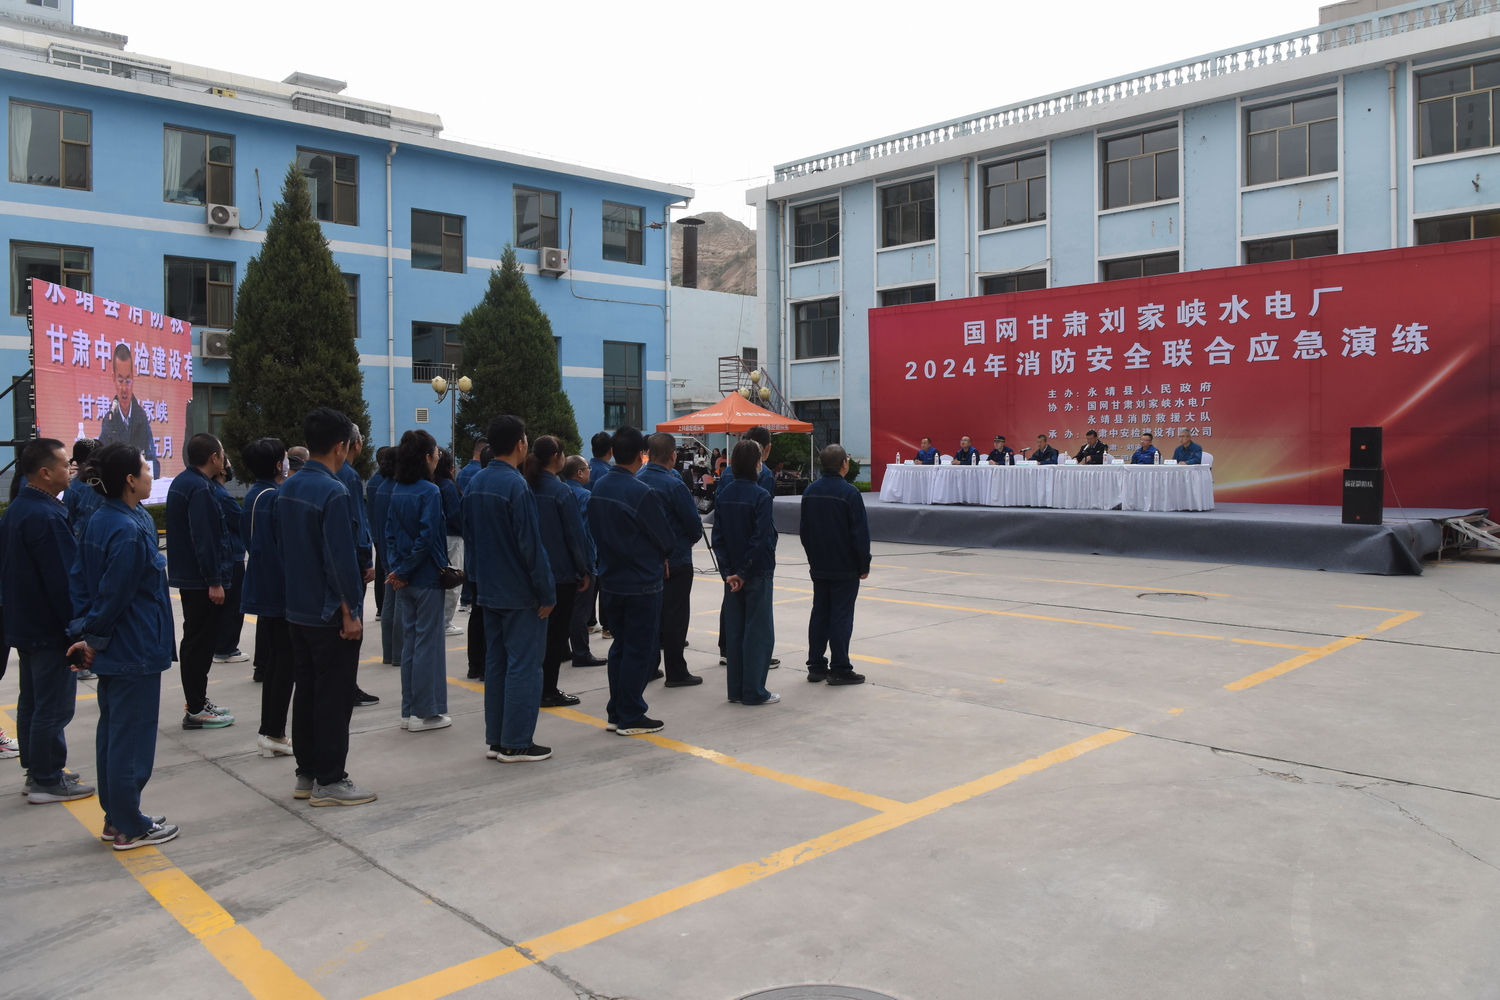 刘家峡水电厂举行2024年消防安全联合应急演练 (1).JPG